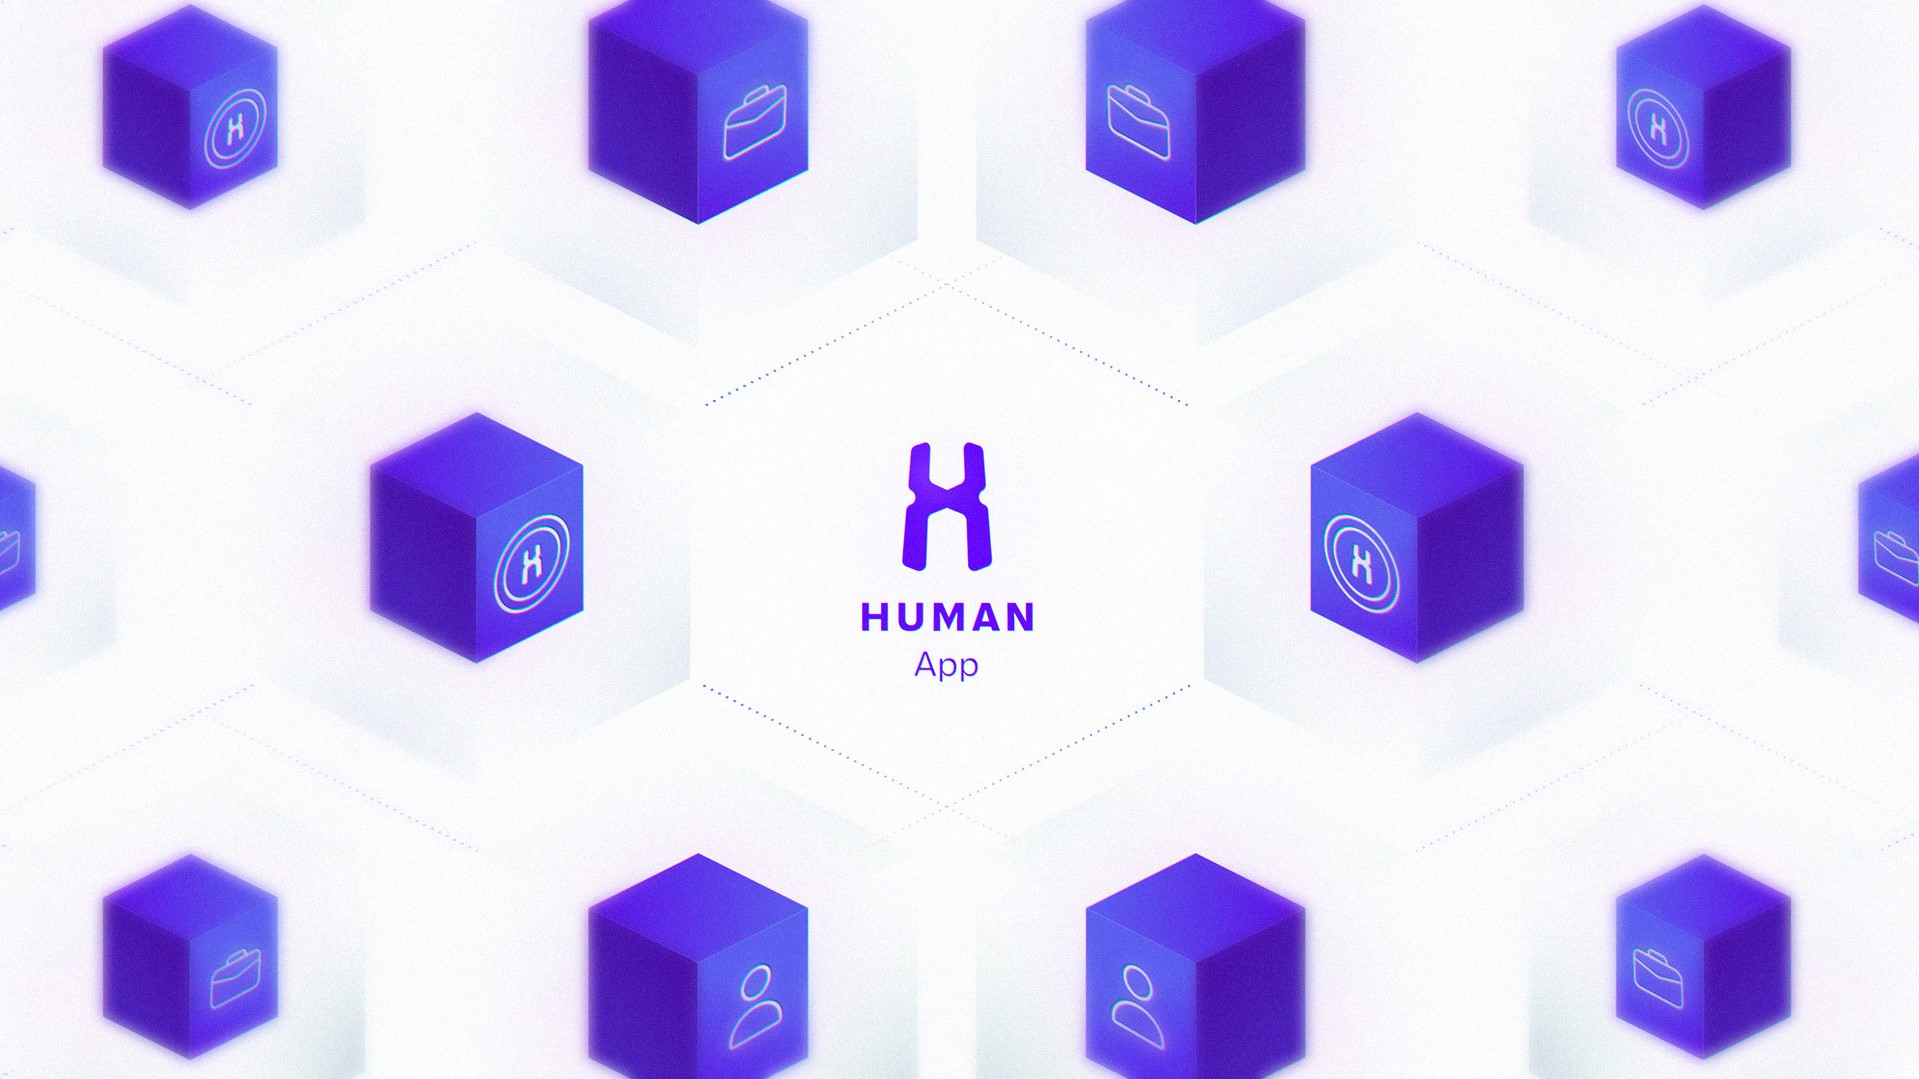 La aplicación HUMAN proporciona una utilidad real para HMT y el ecosistema HUMAN